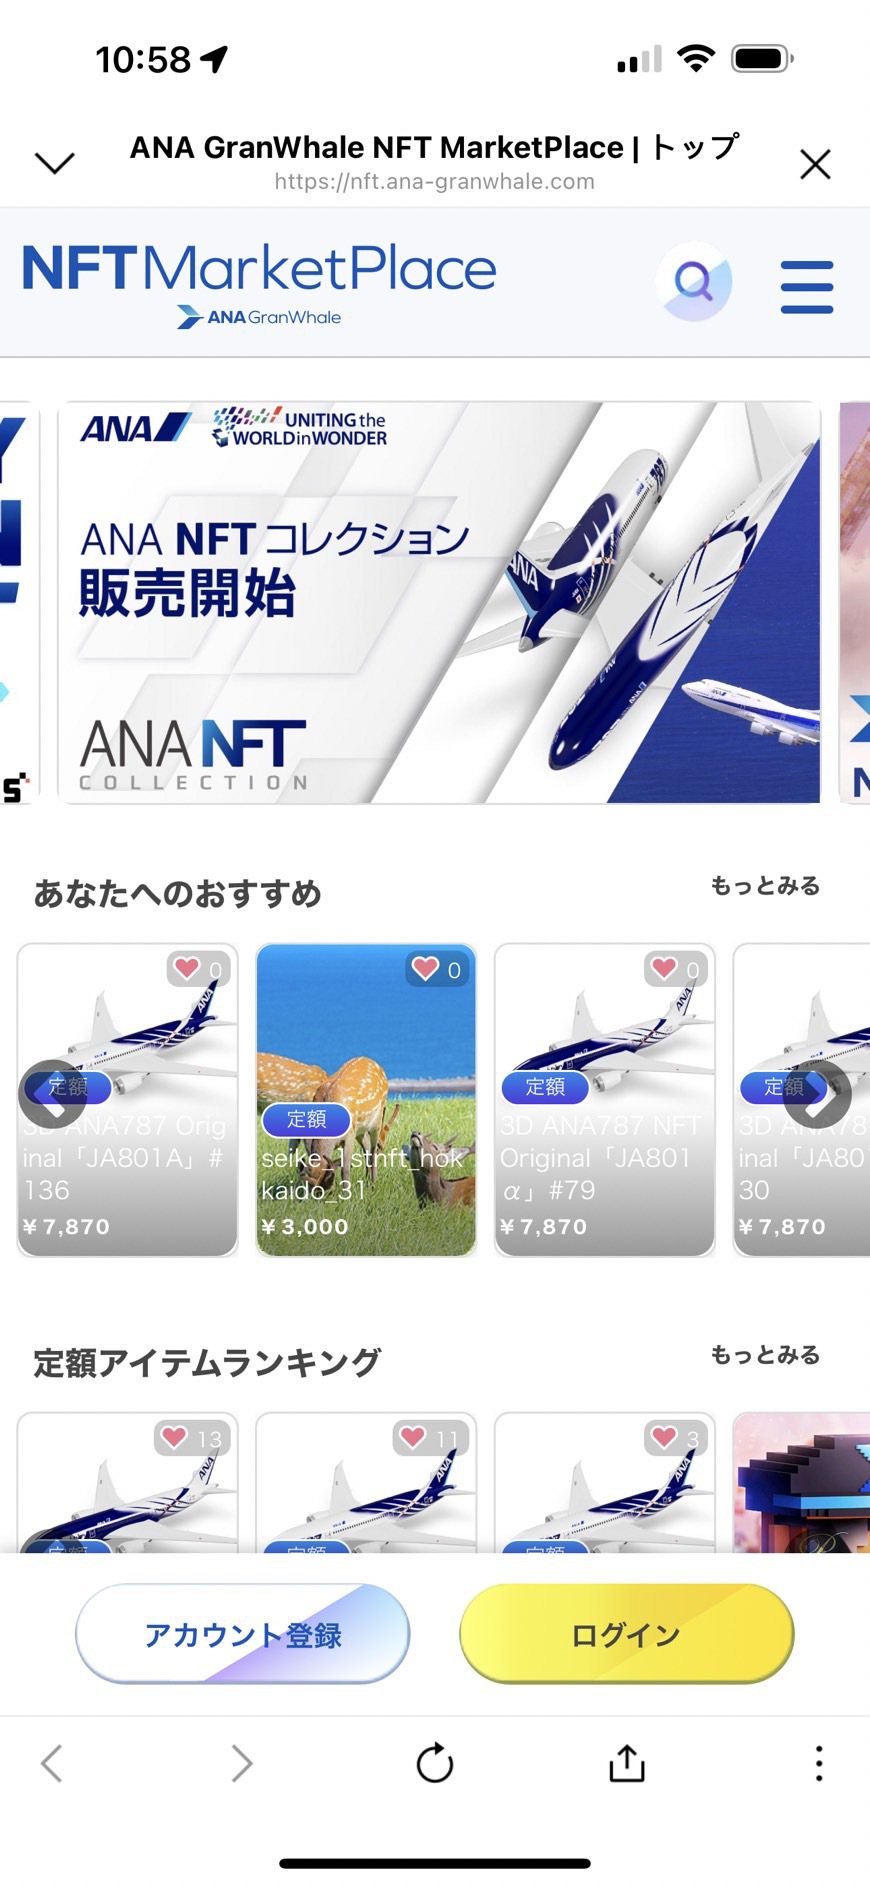 ANA NEO 股份有限公司及全日本空輸股份有限公司透過活用區塊鏈技術開啟了新業...